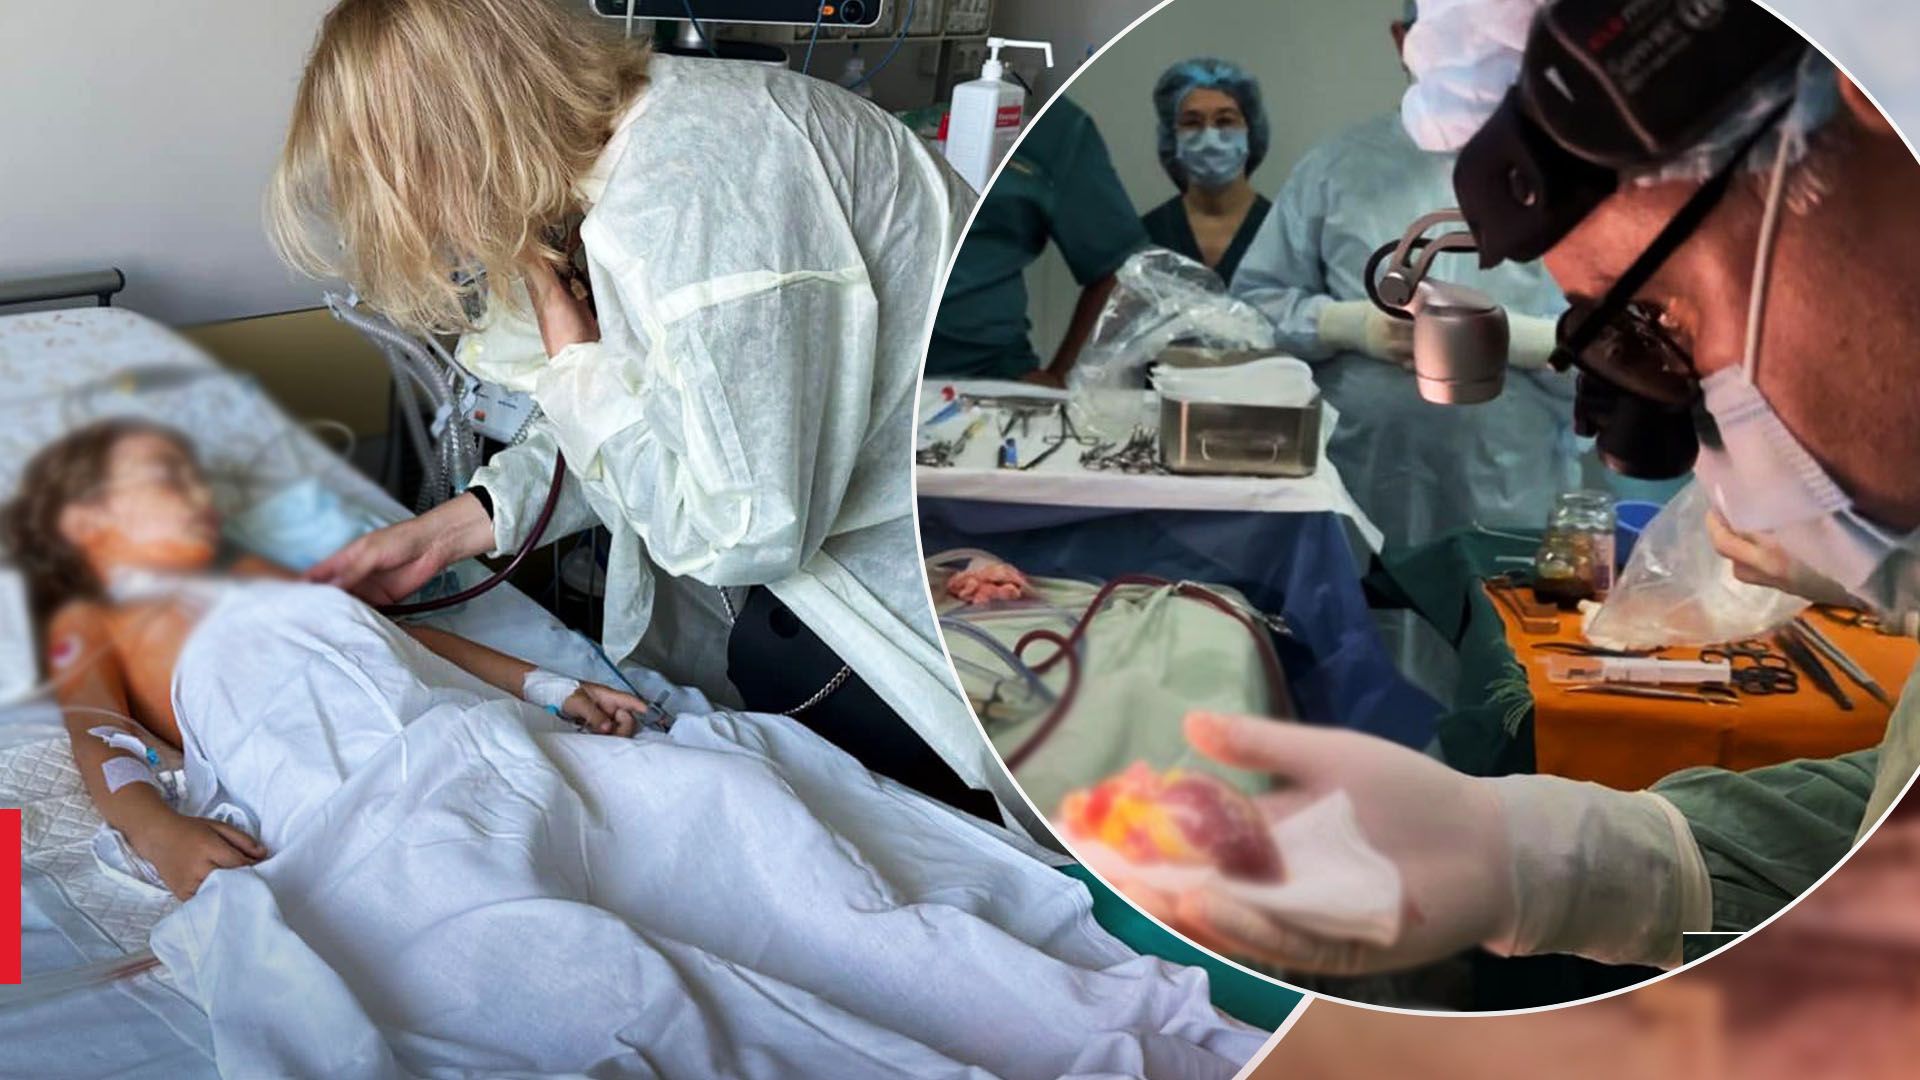 "Впервые в Украине": ребенку успешно пересадили сердце, что известно о его состоянии - Здоровье 24